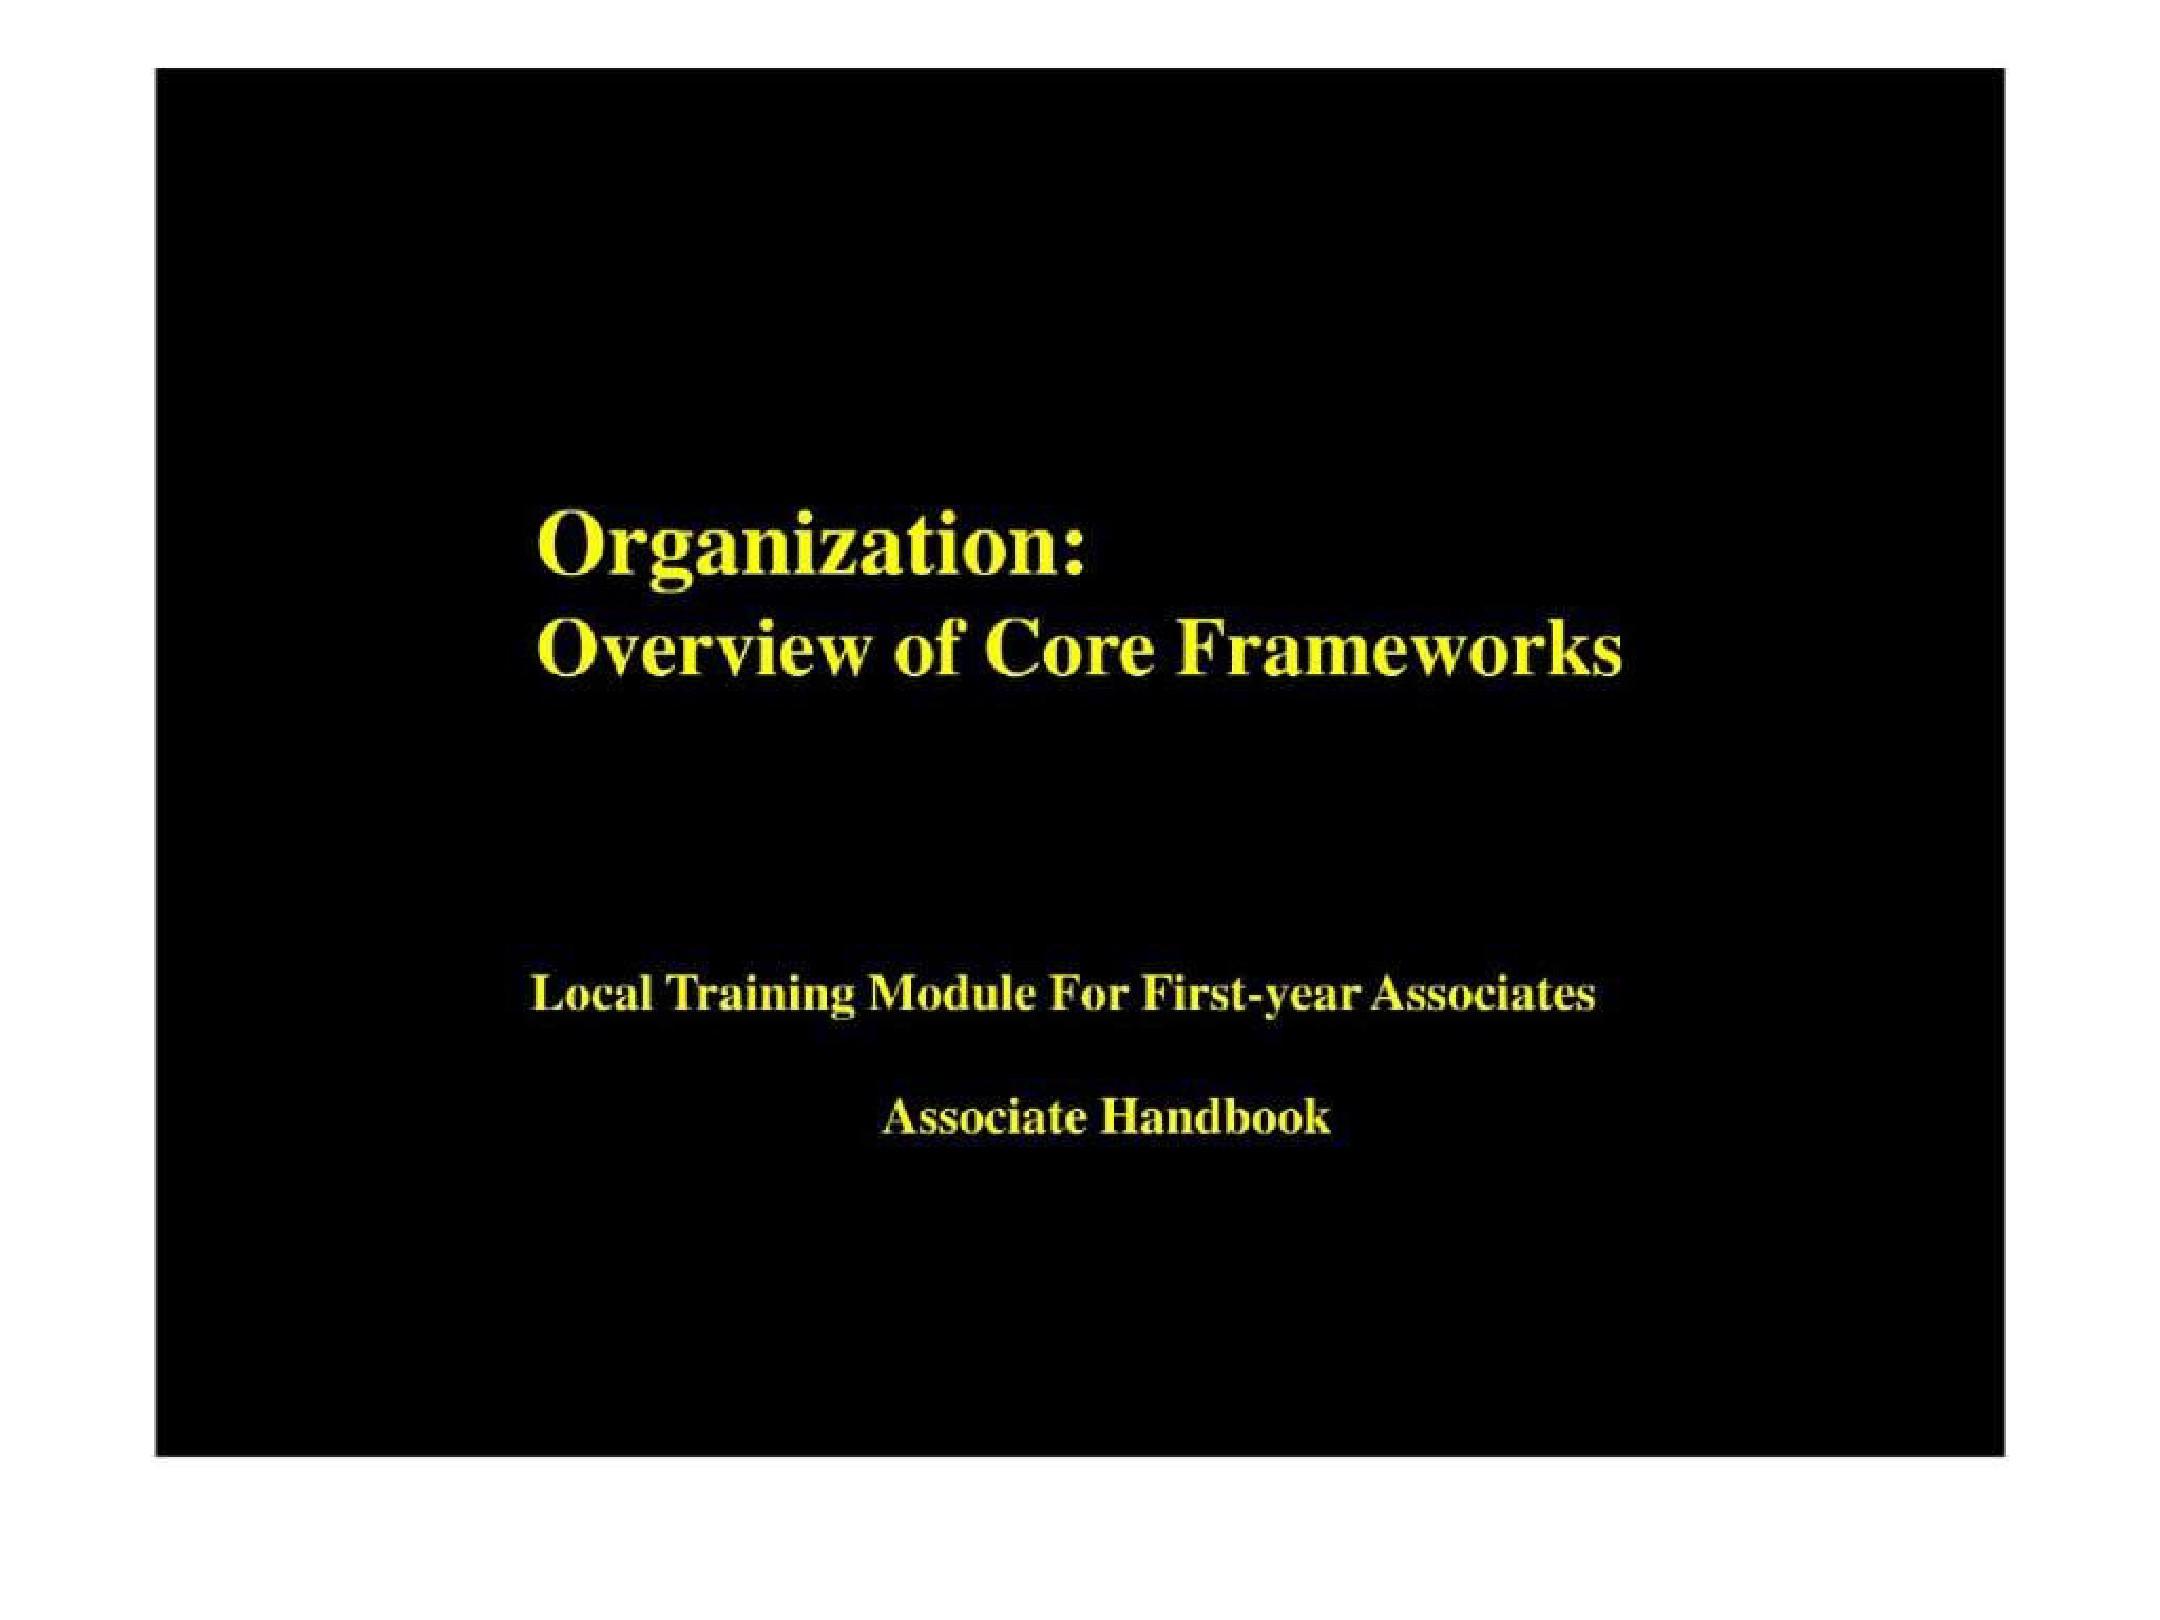 麦肯锡新员工培训手册(内有全部麦肯锡的工具和方法介绍